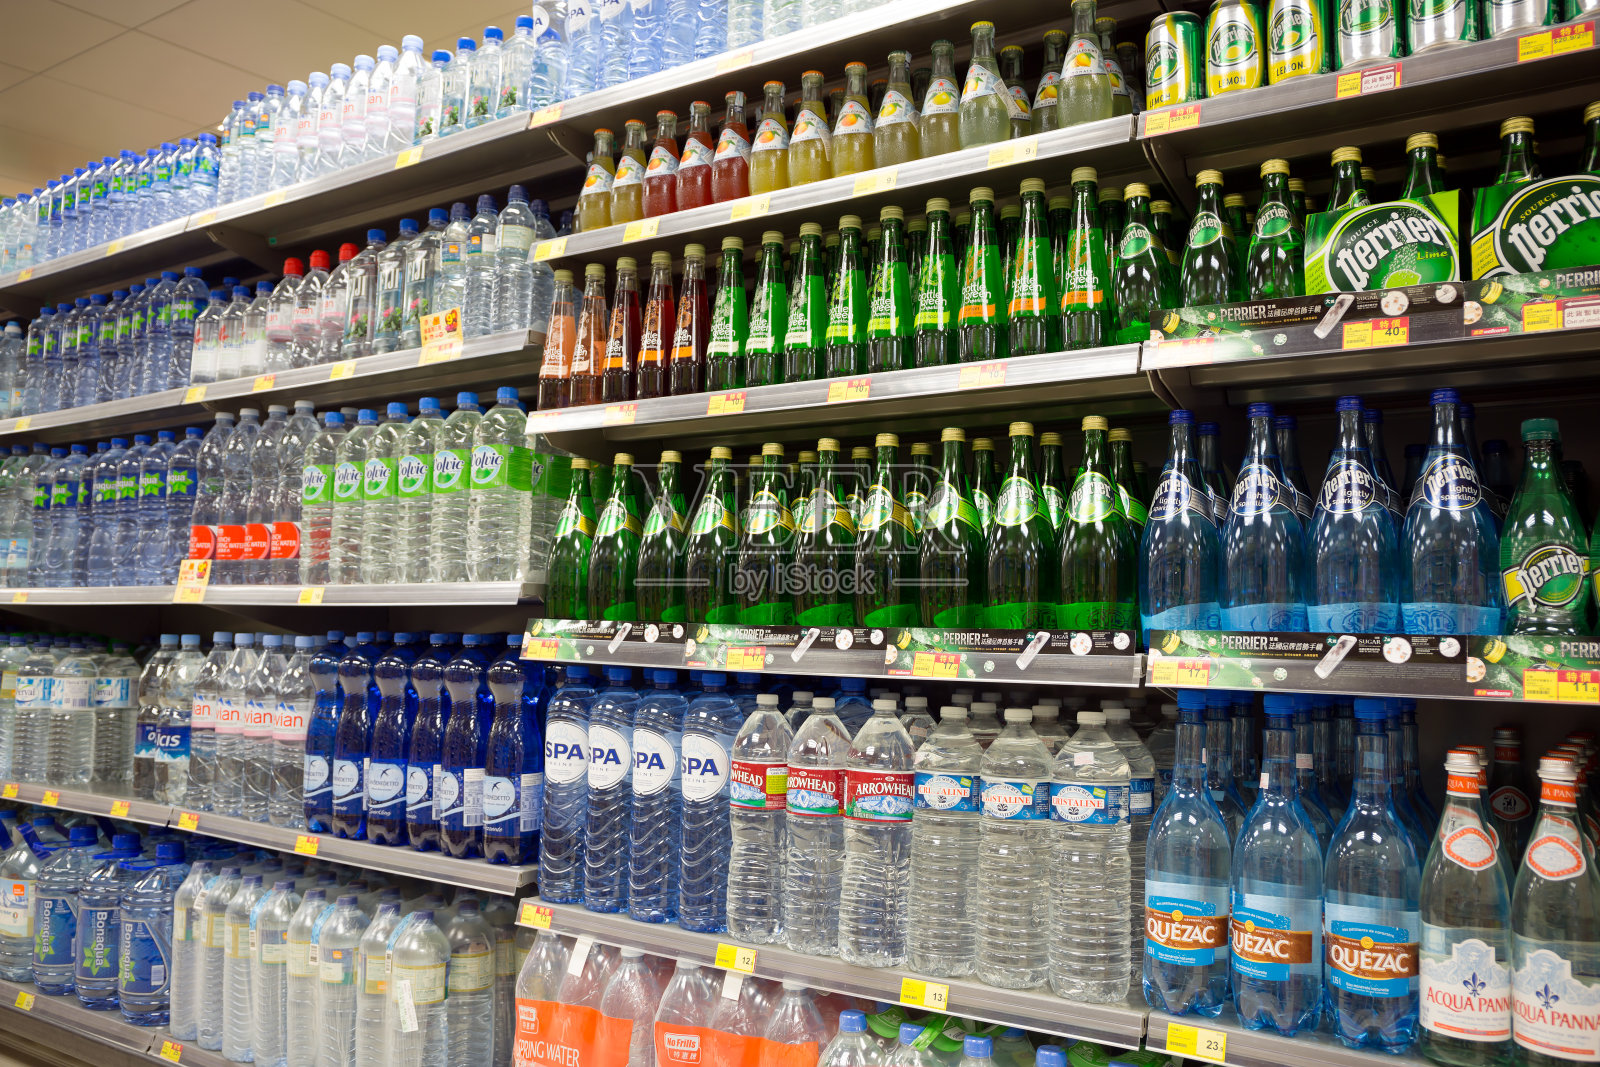 这是超市瓶装水展示的中心。照片摄影图片